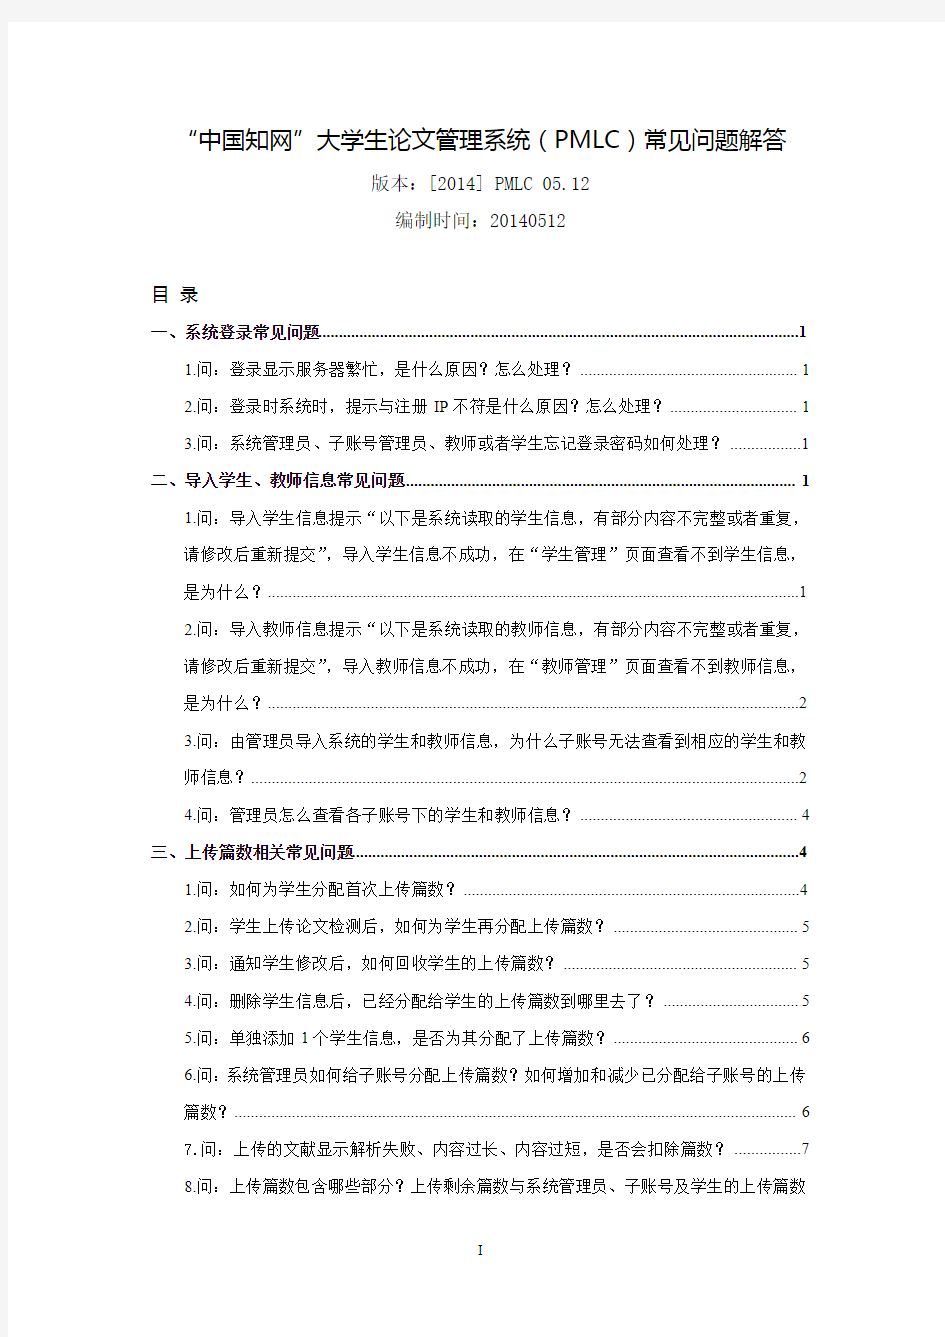 “中国知网”大学生论文管理系统 PMLC 常见问题解答